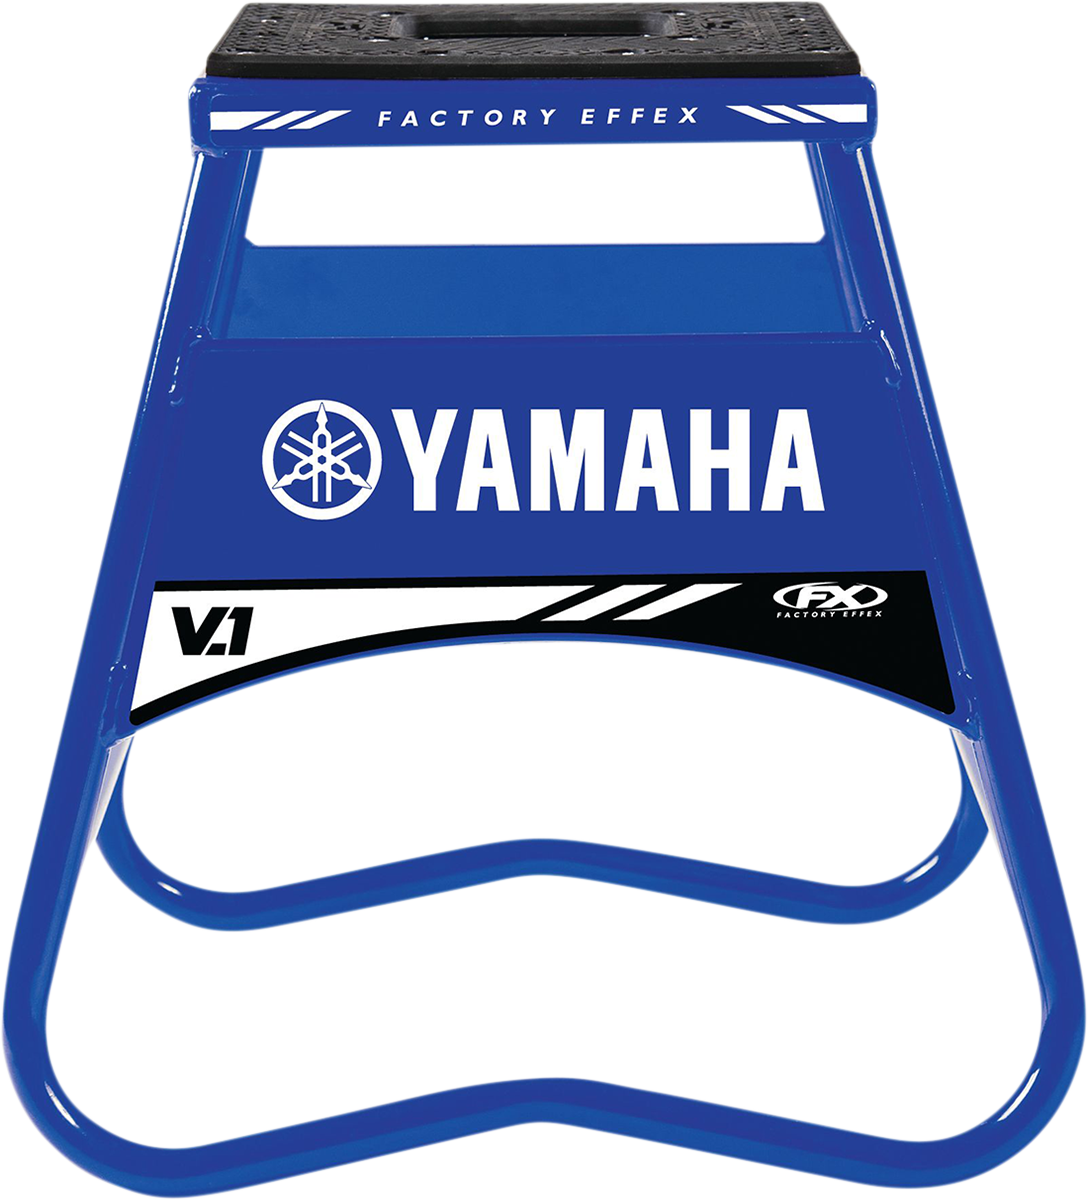 Soporte para bicicletas FACTORY EFFEX - Yamaha - Azul 24-45220 